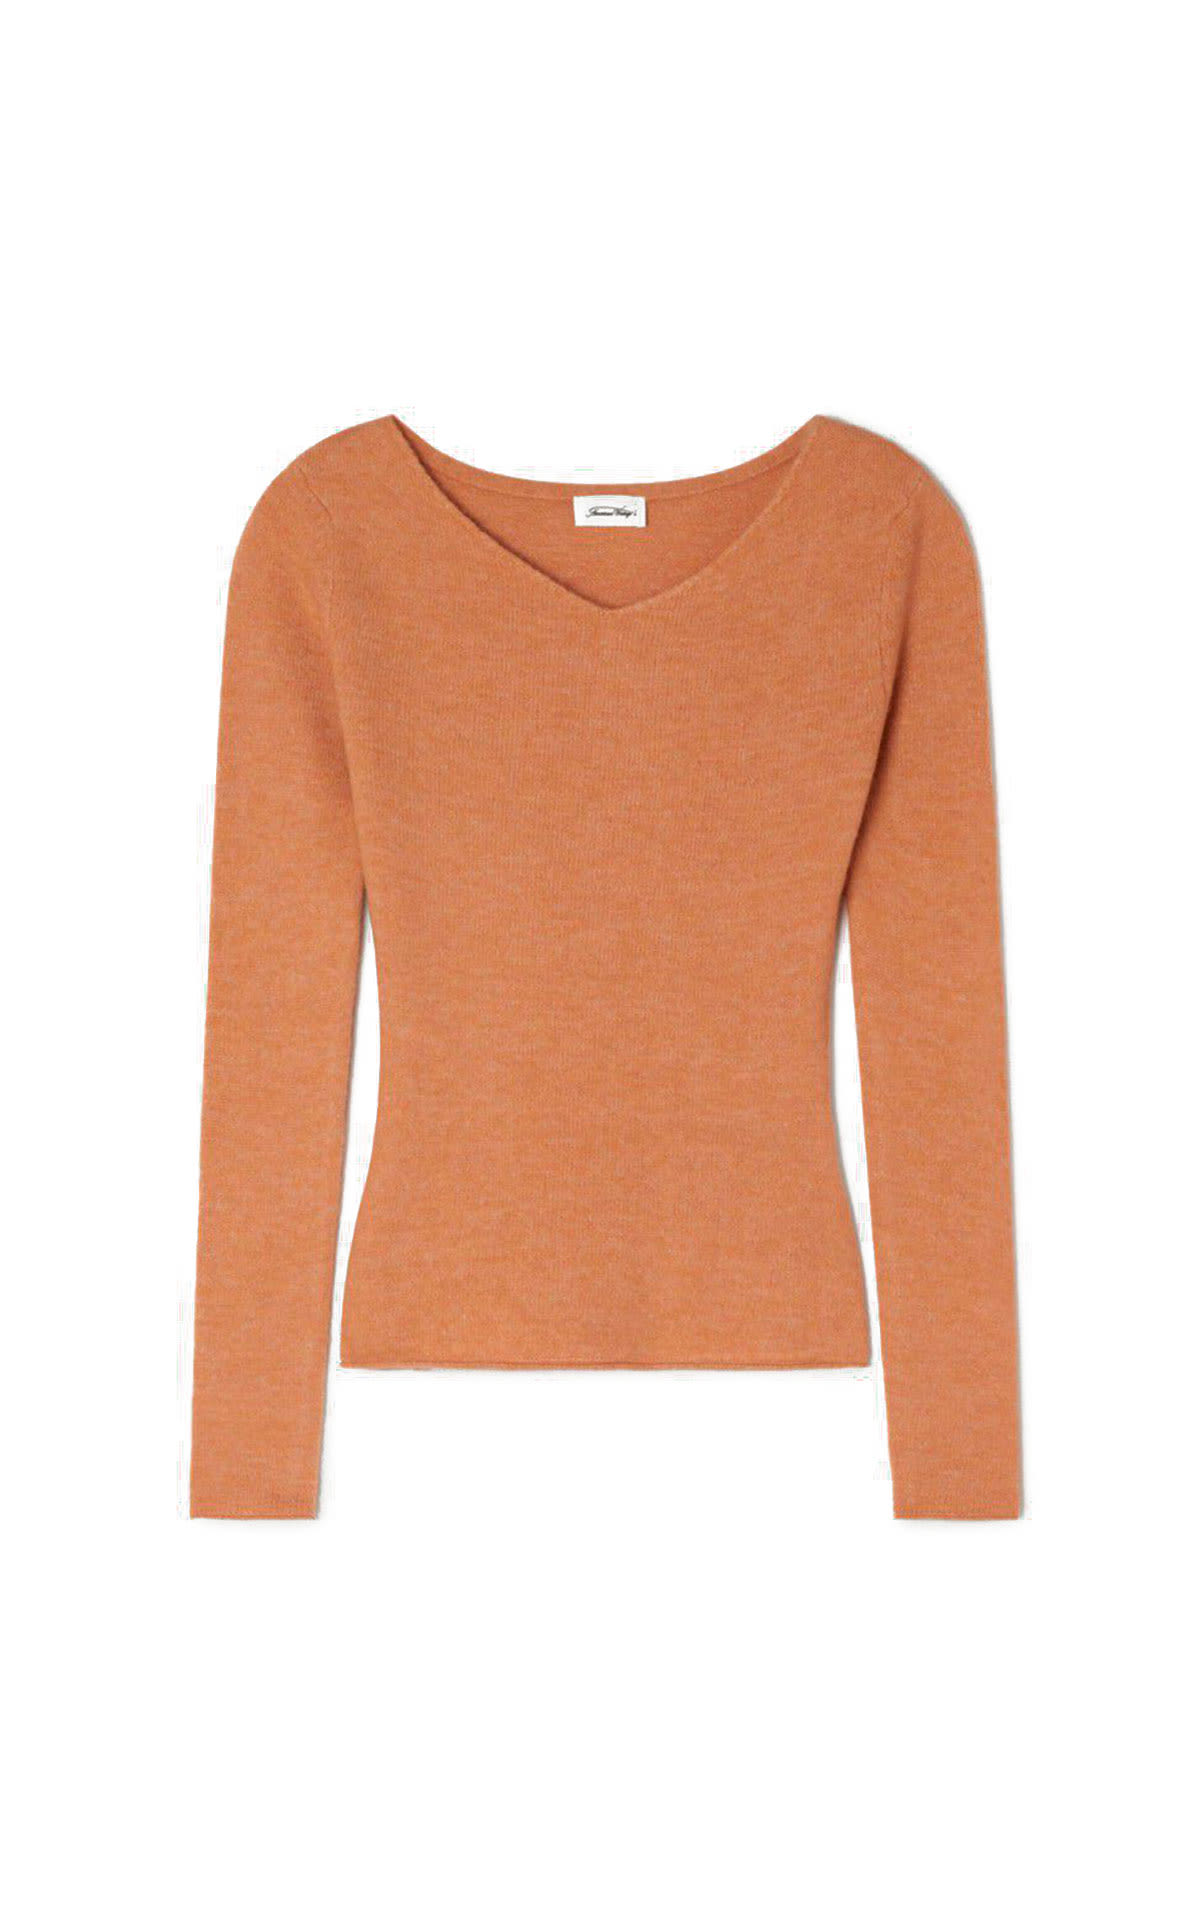 Orange V-neck sweater American Vintage